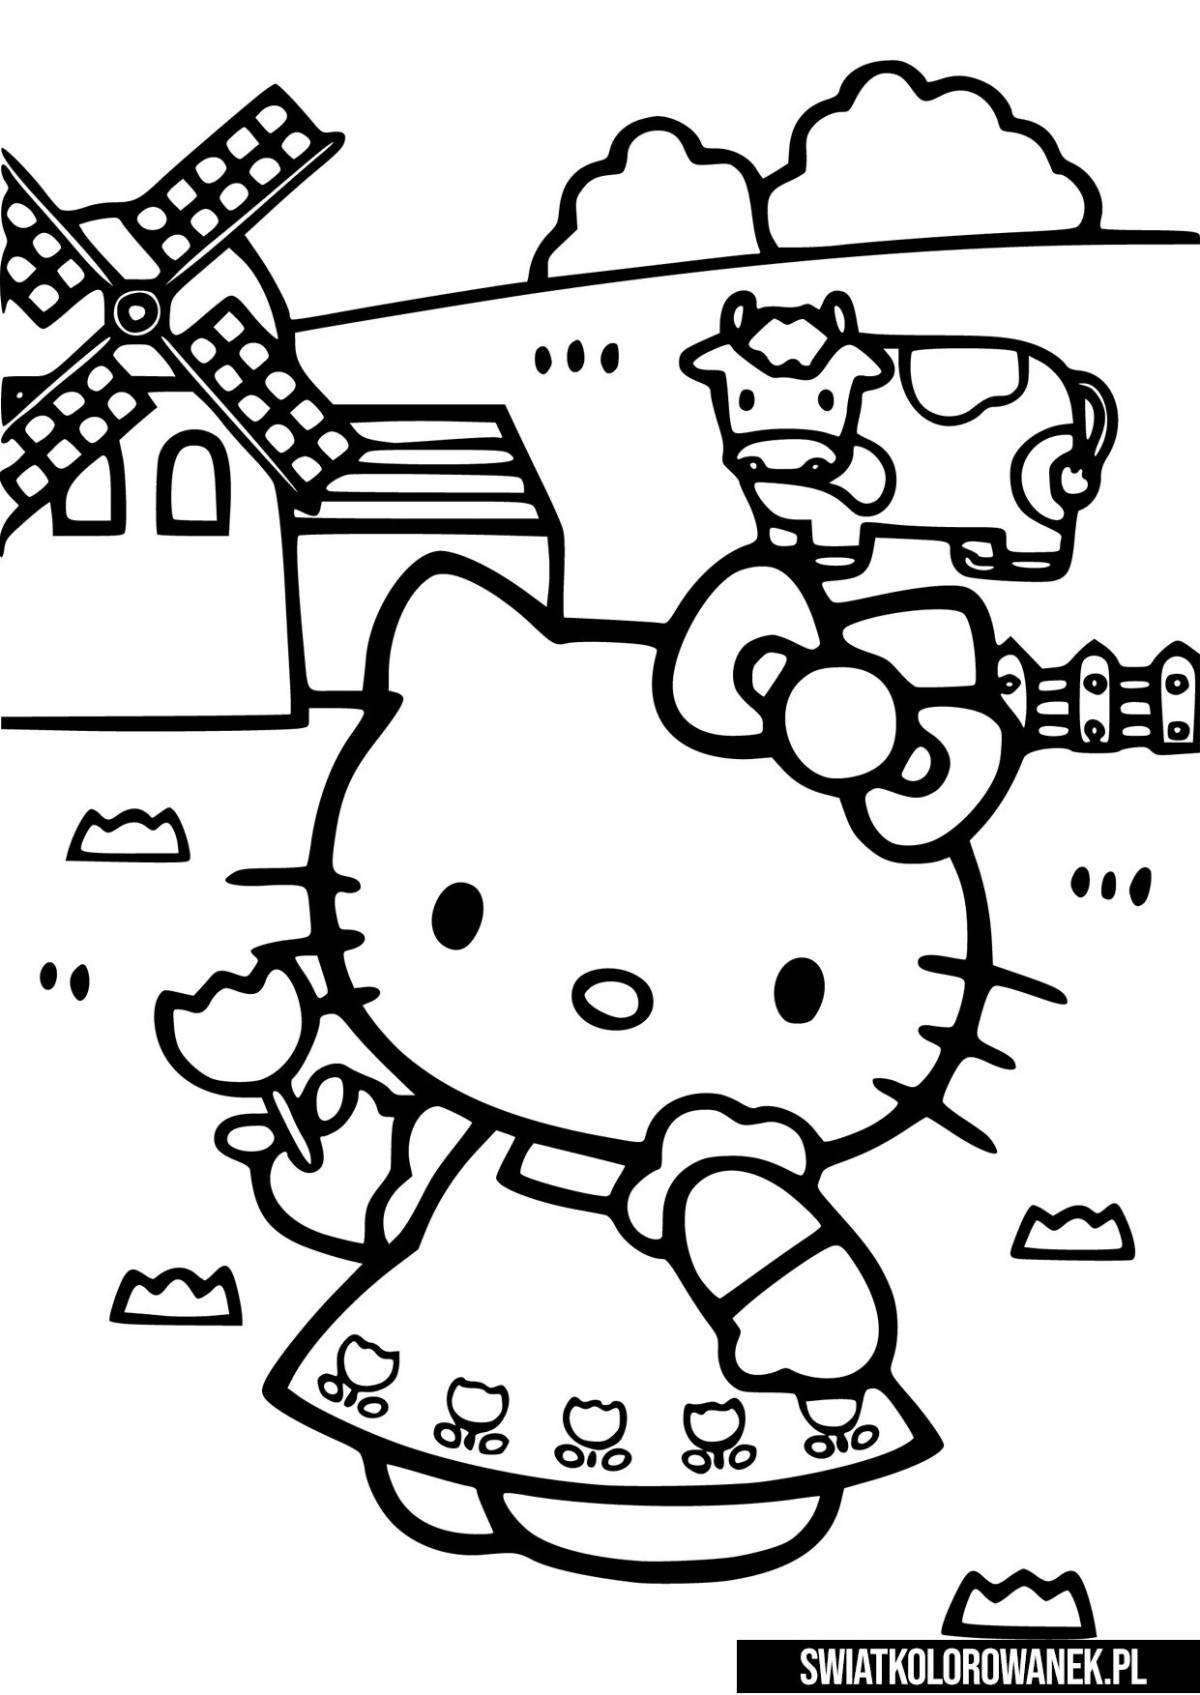 Развлекательная игра-раскраска hello kitty